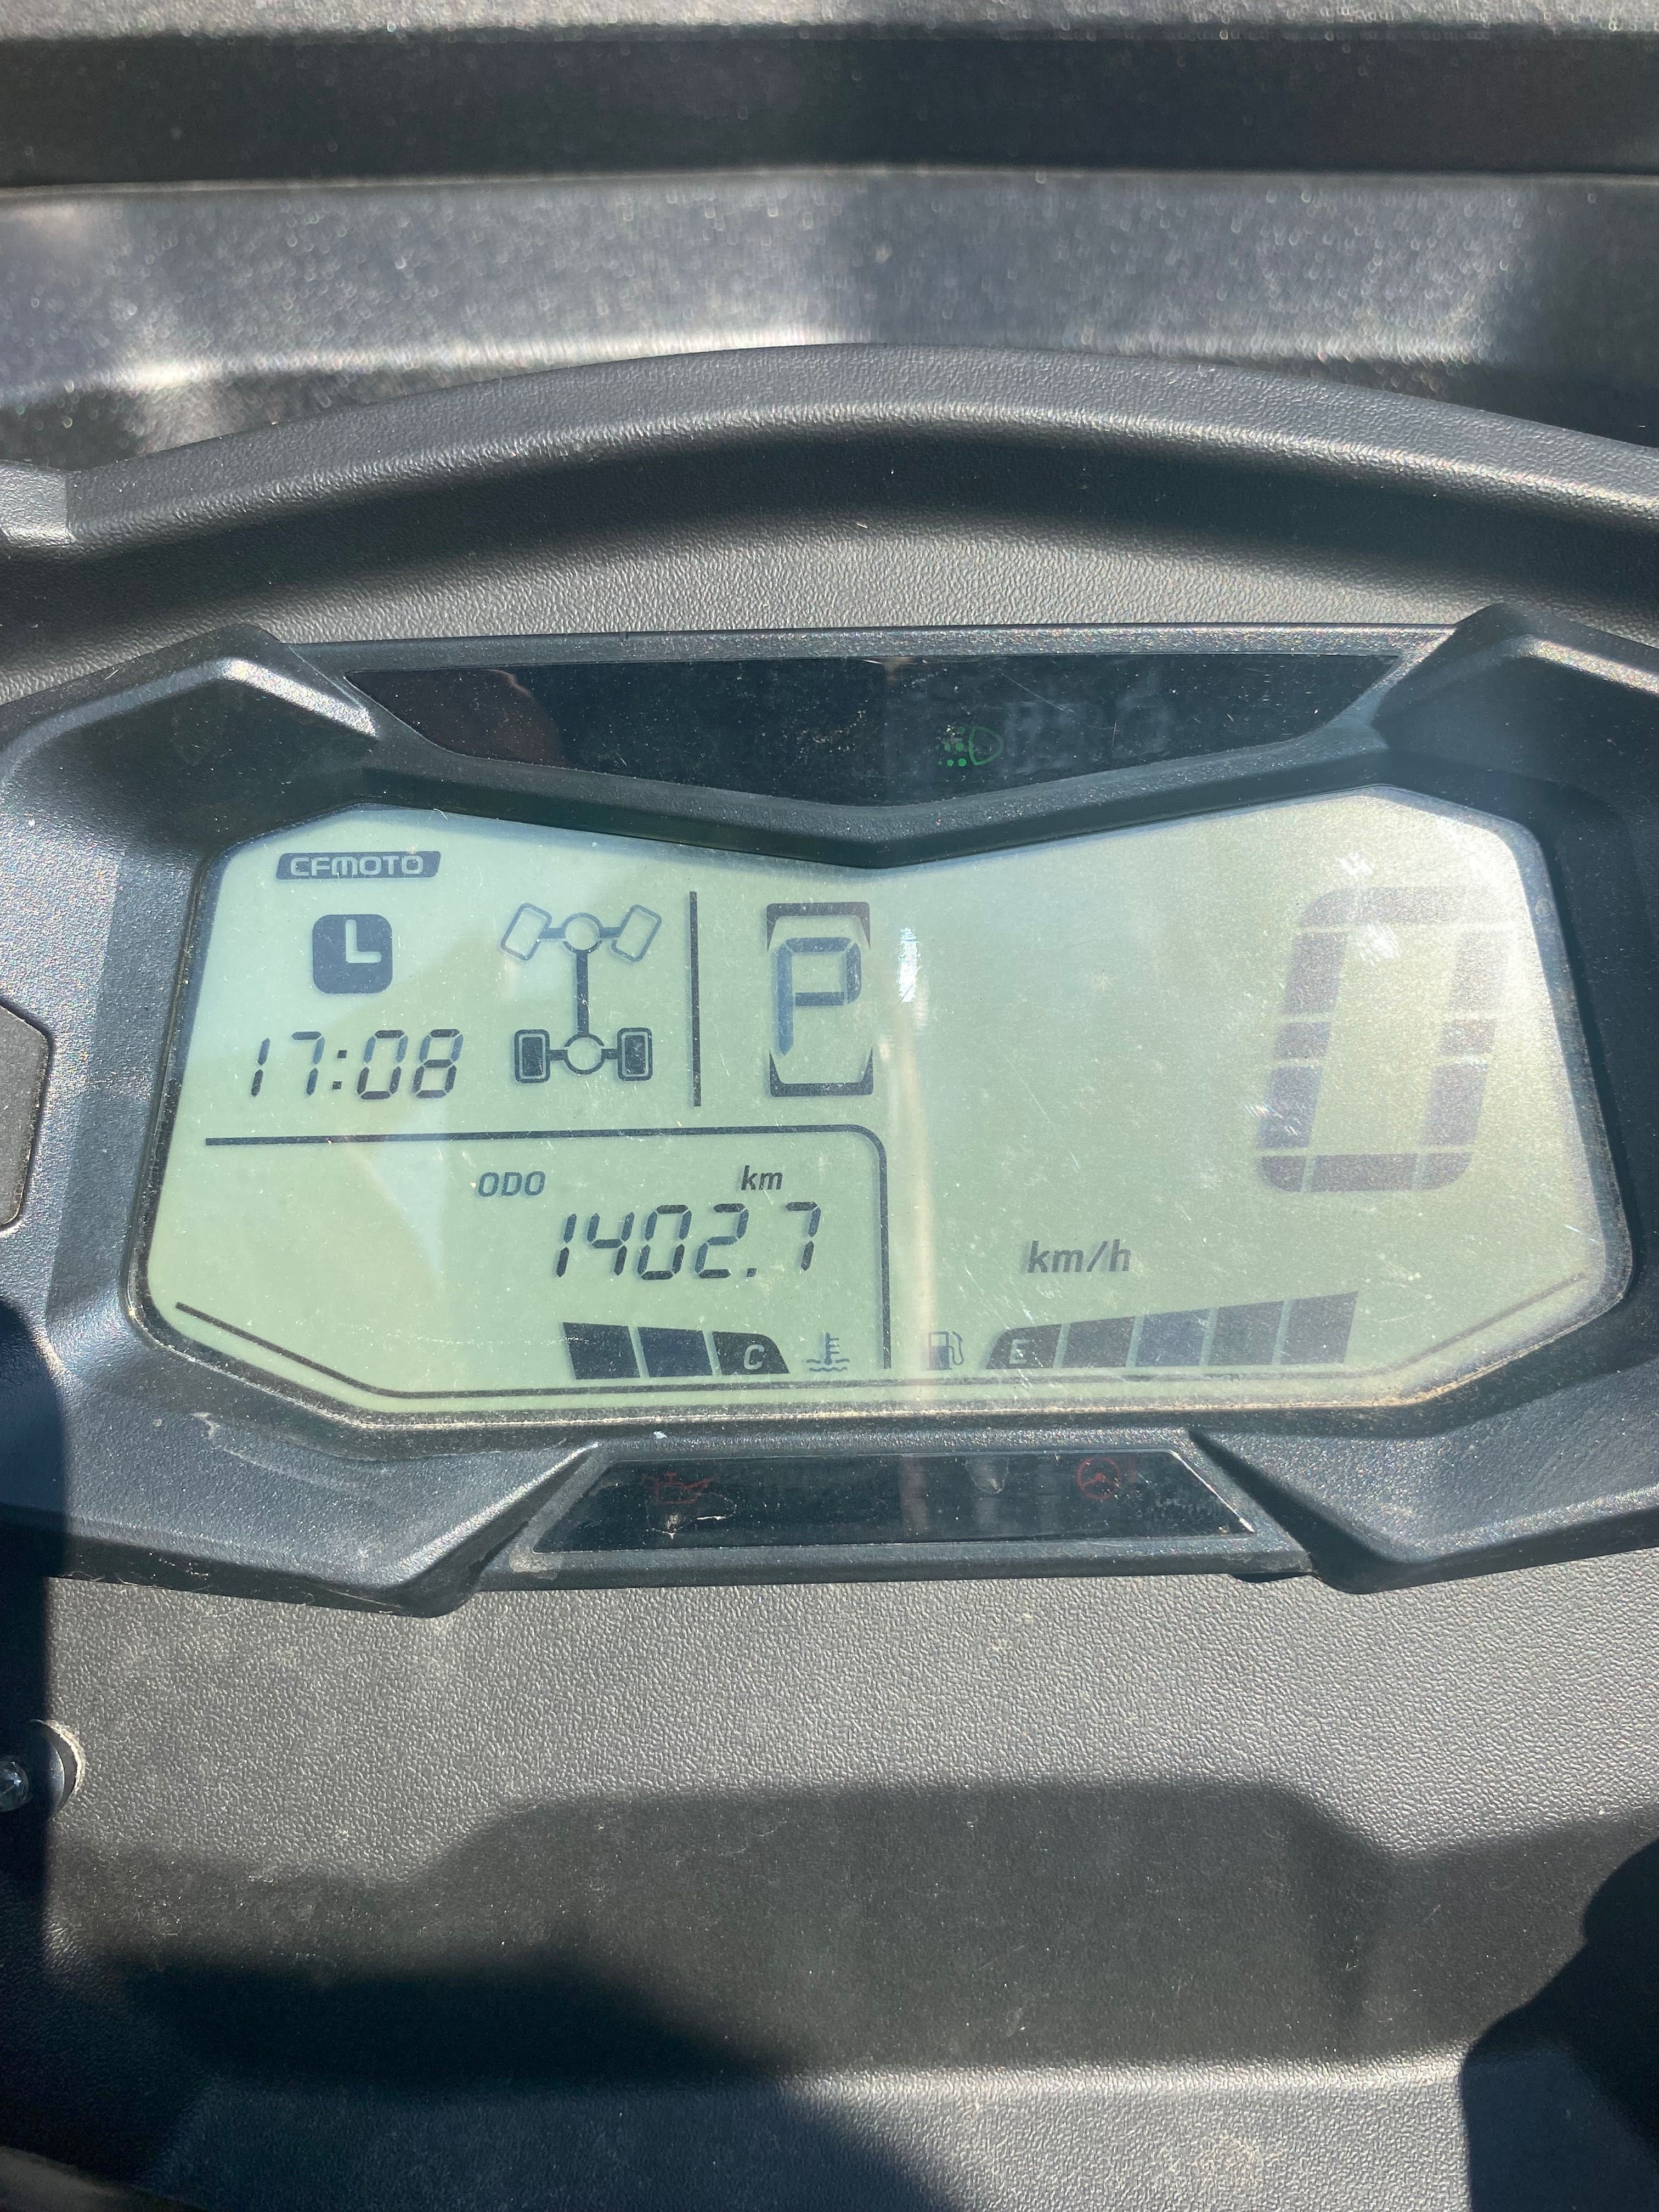 Cf Moto 1000 38 mth 1400 km